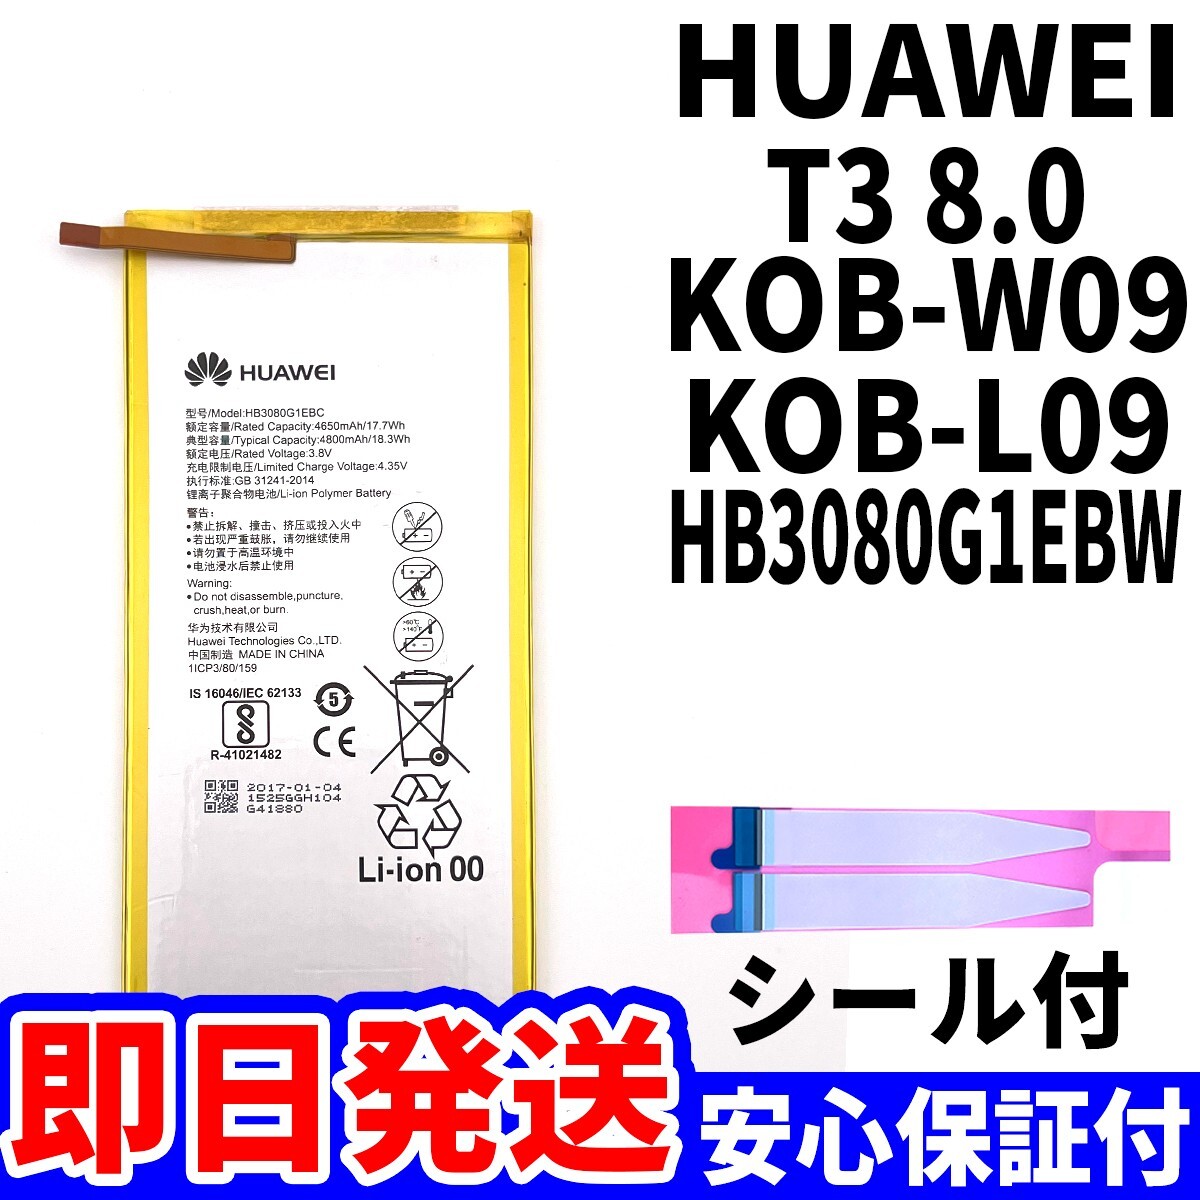 国内即日発送!純正同等新品!Huawei MadiaPad T3 8.0 KOB-W09 バッテリー HB3080G1EBW 電池パック交換 内蔵battery 両面テープ 単品 工具無_画像1